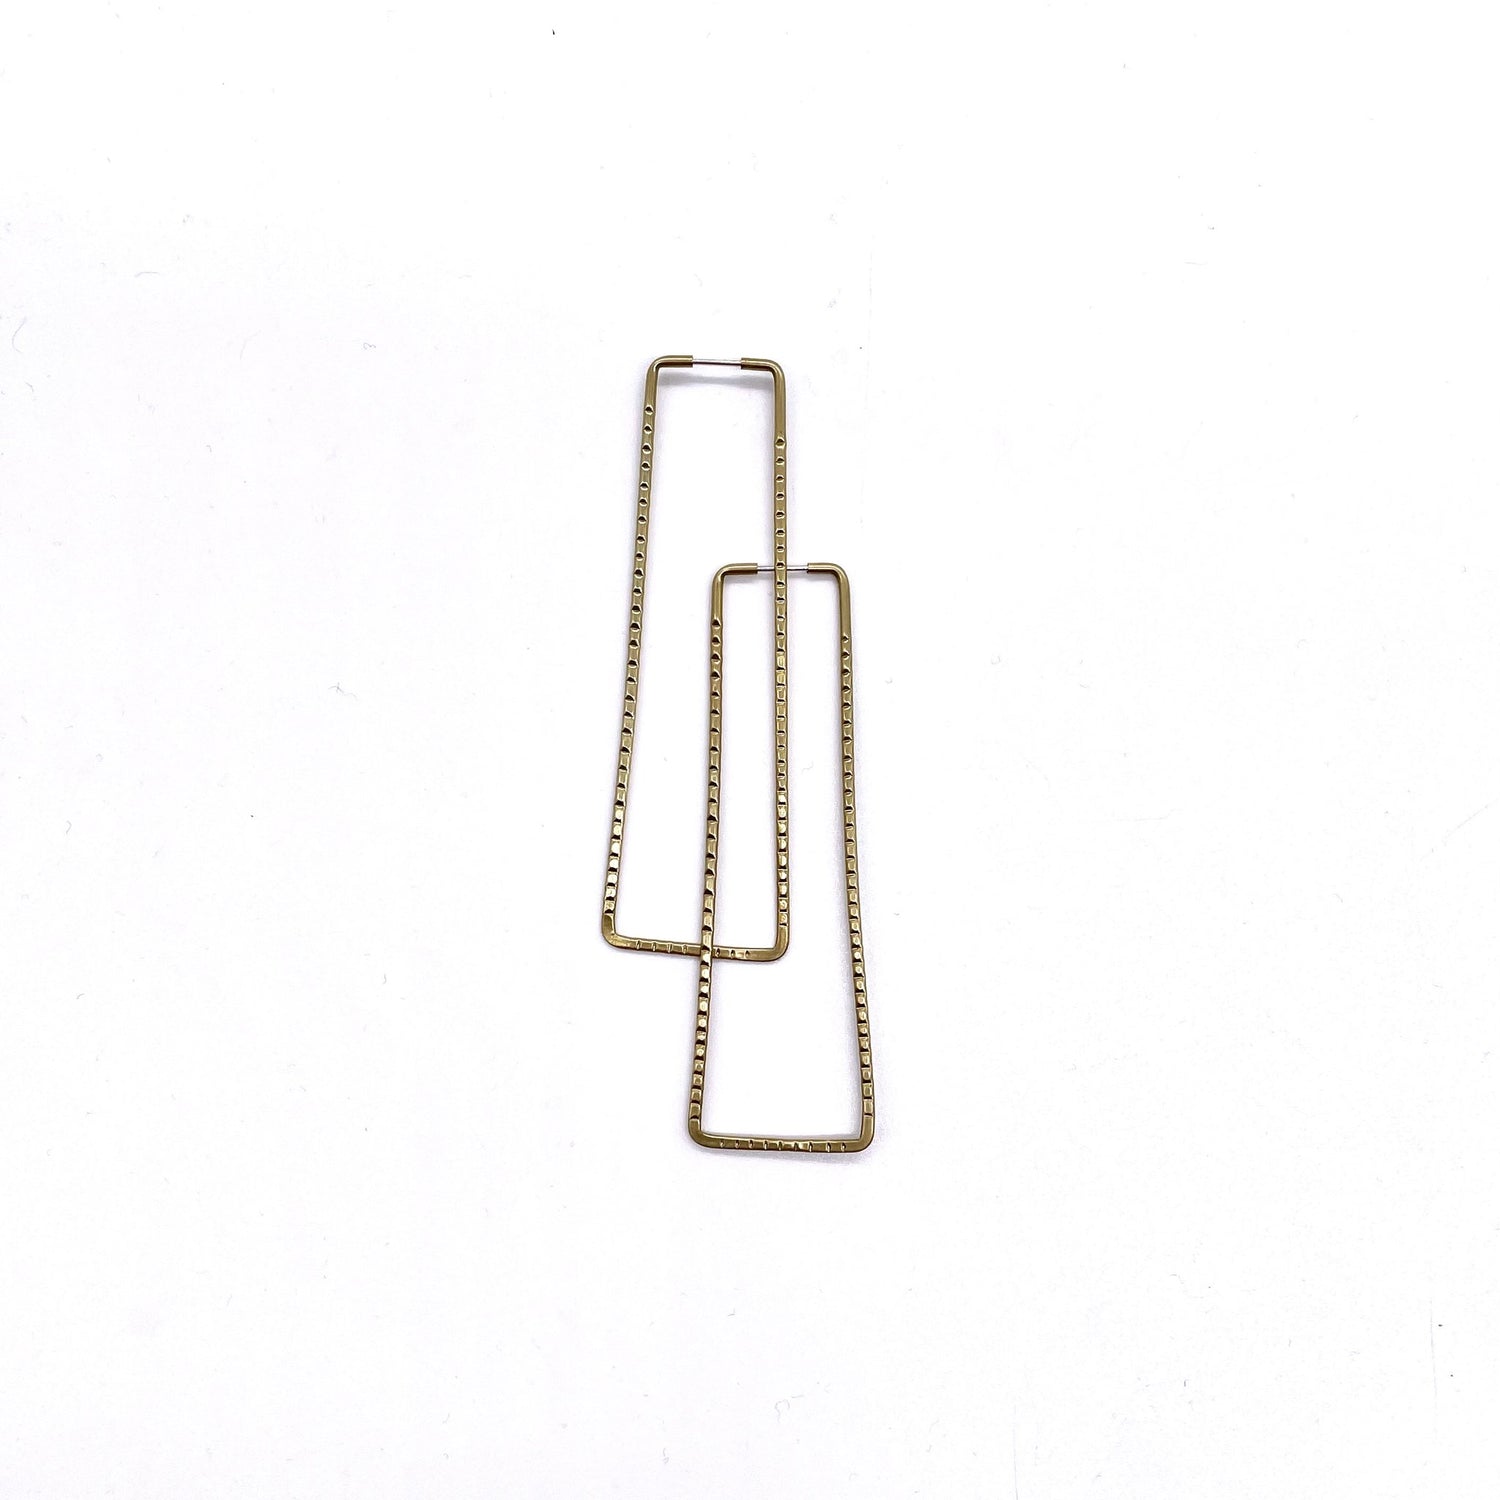 Brass geometric hoop earrings in ridged rectangle shape.